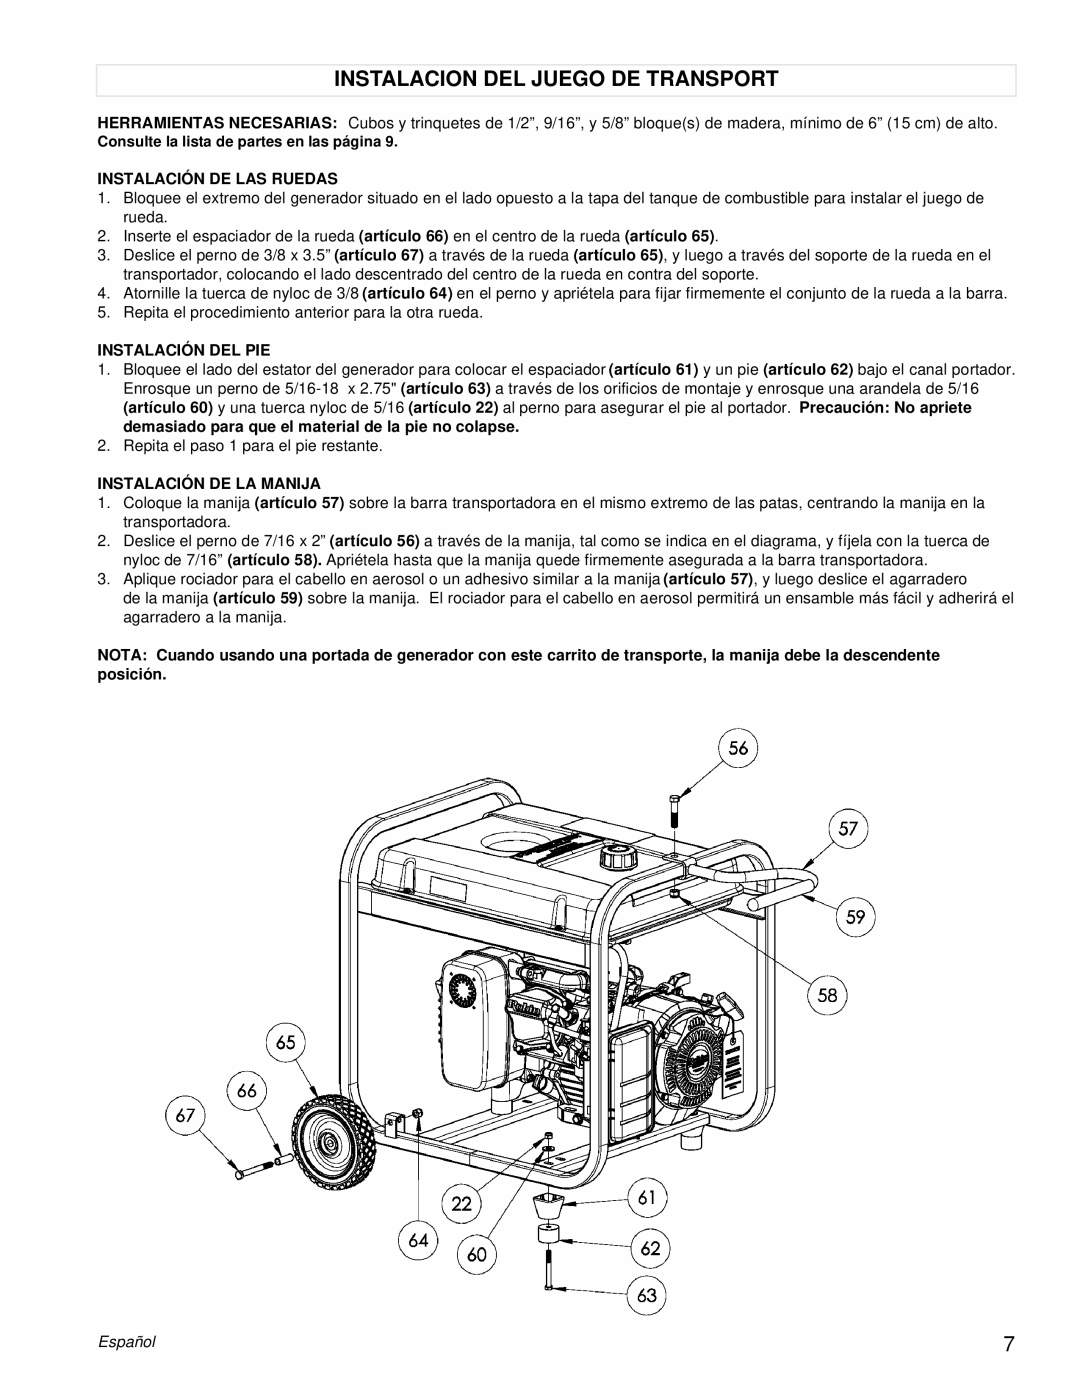 Powermate PM0435002 manual Instalacion Del Juego De Transport, Instalación De Las Ruedas, Instalación Del Pie, Español 